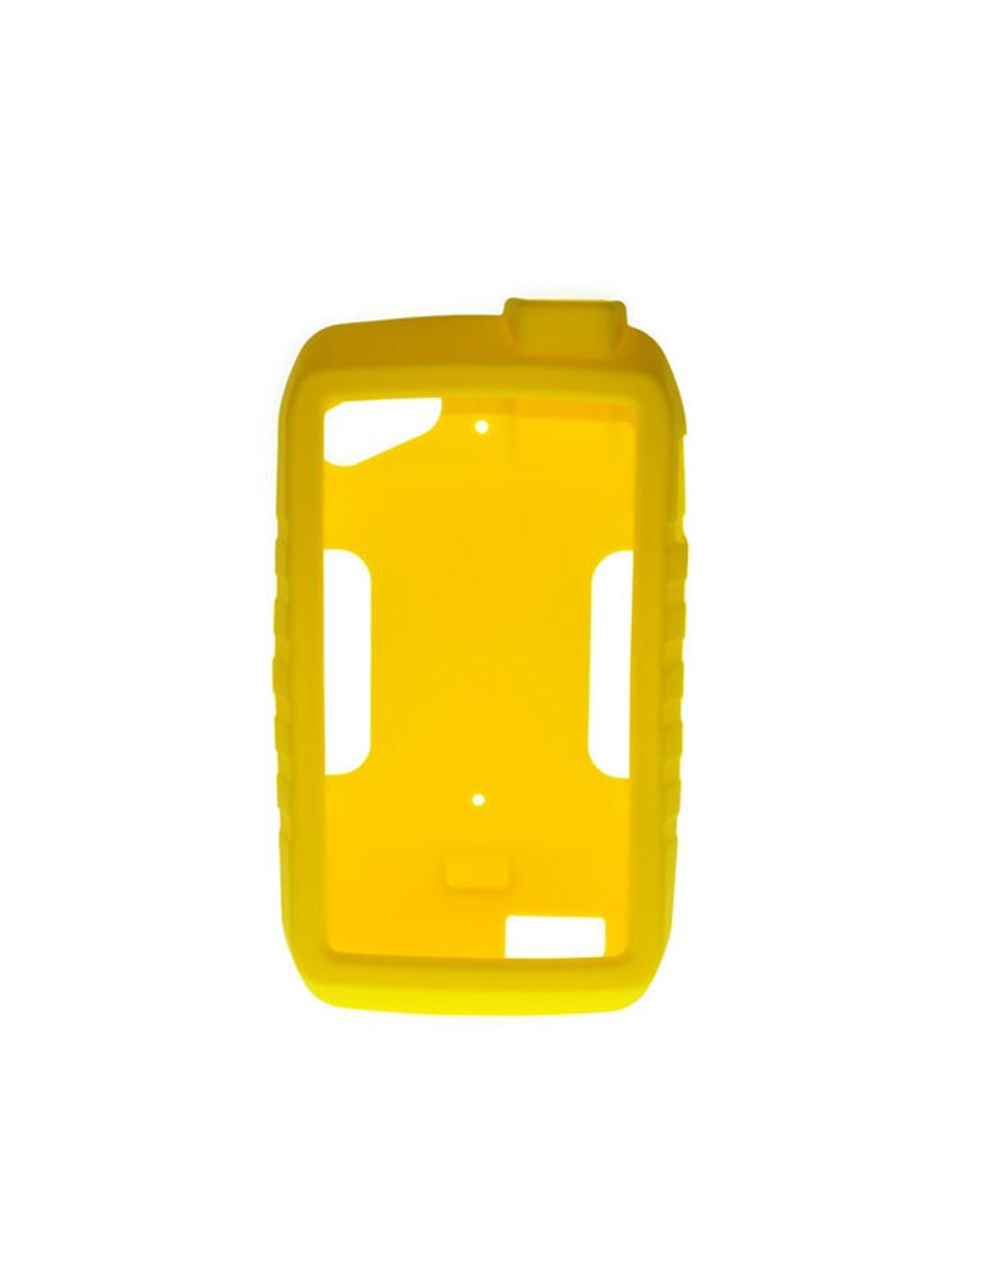 Garmin Montana 750i/700i чехол силиконовый Желтый